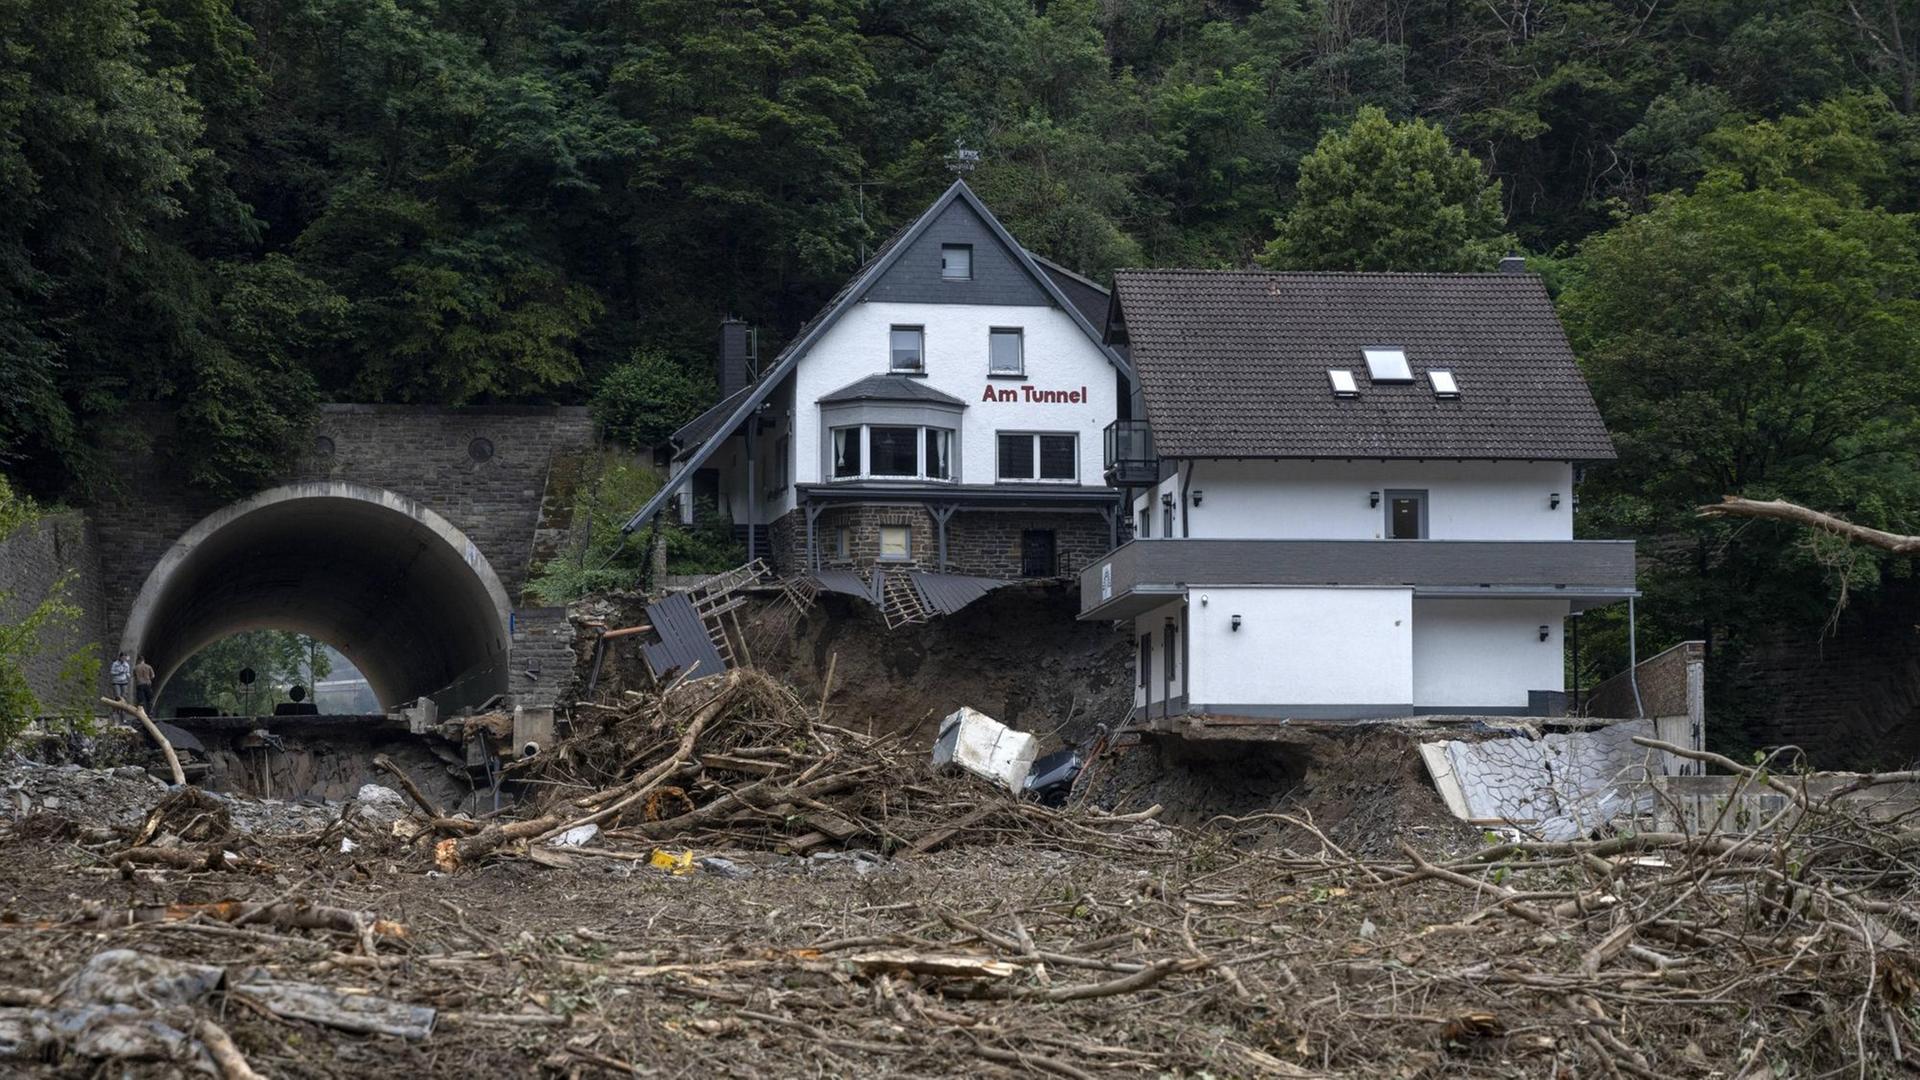 Ein Haus mit der Beschriftung "Am Tunnel", von dem ein großer Teil des Unterschosses und des Hanges, auf dem es steht, weggeschwemmt wurde.